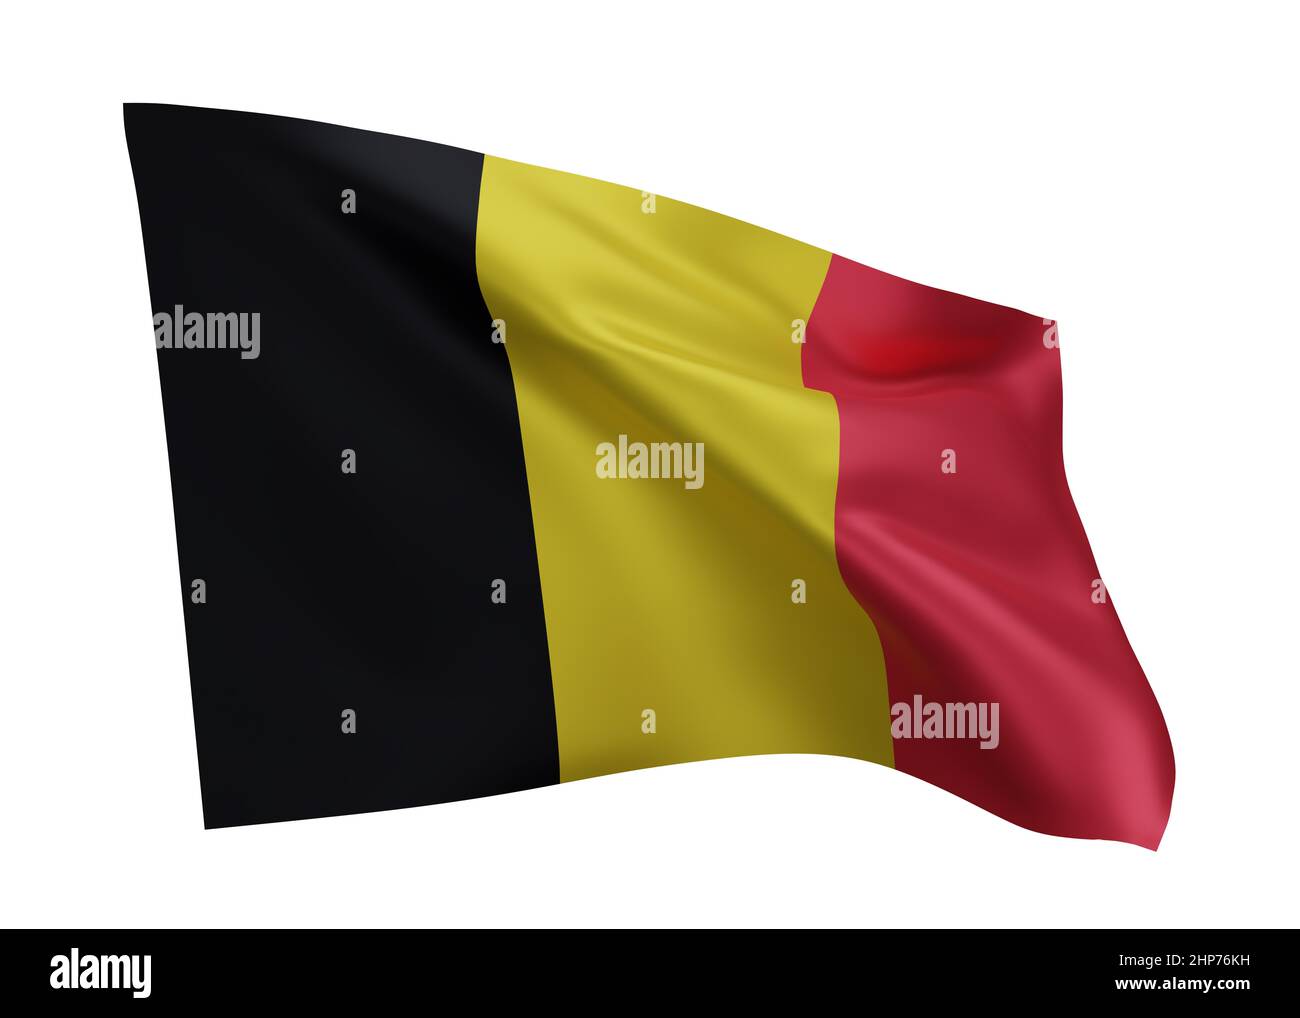 3d illustration flag of Belgium. Belgian high resolution flag isolated against white background. 3d rendering Stock Photo